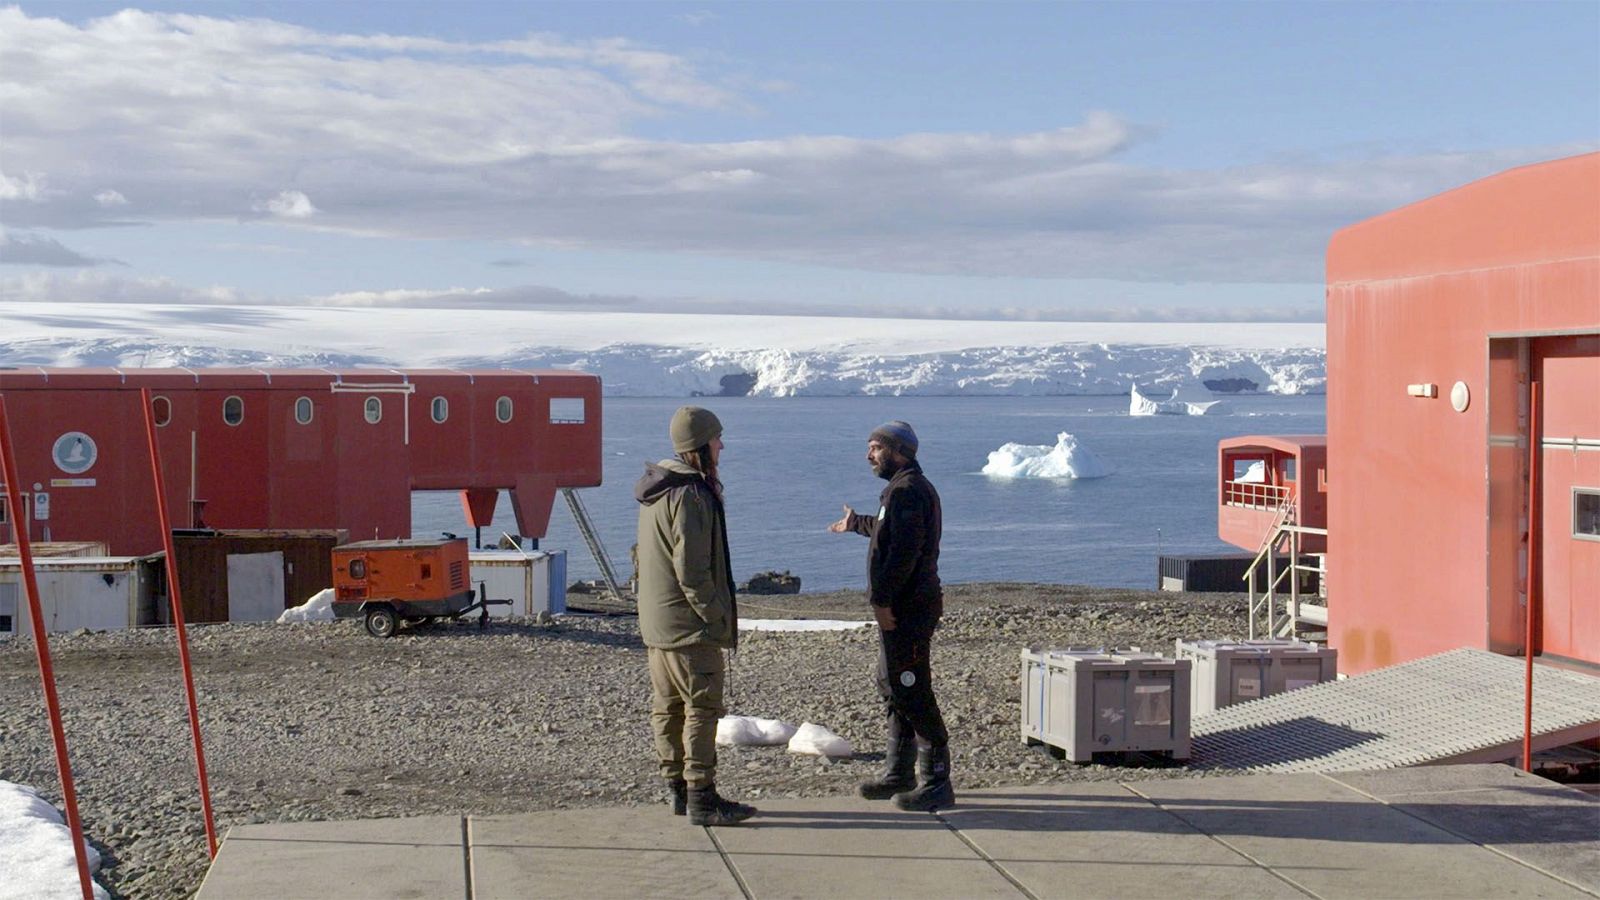 Destino Antártida - Episodio 2: La base - Ver ahora